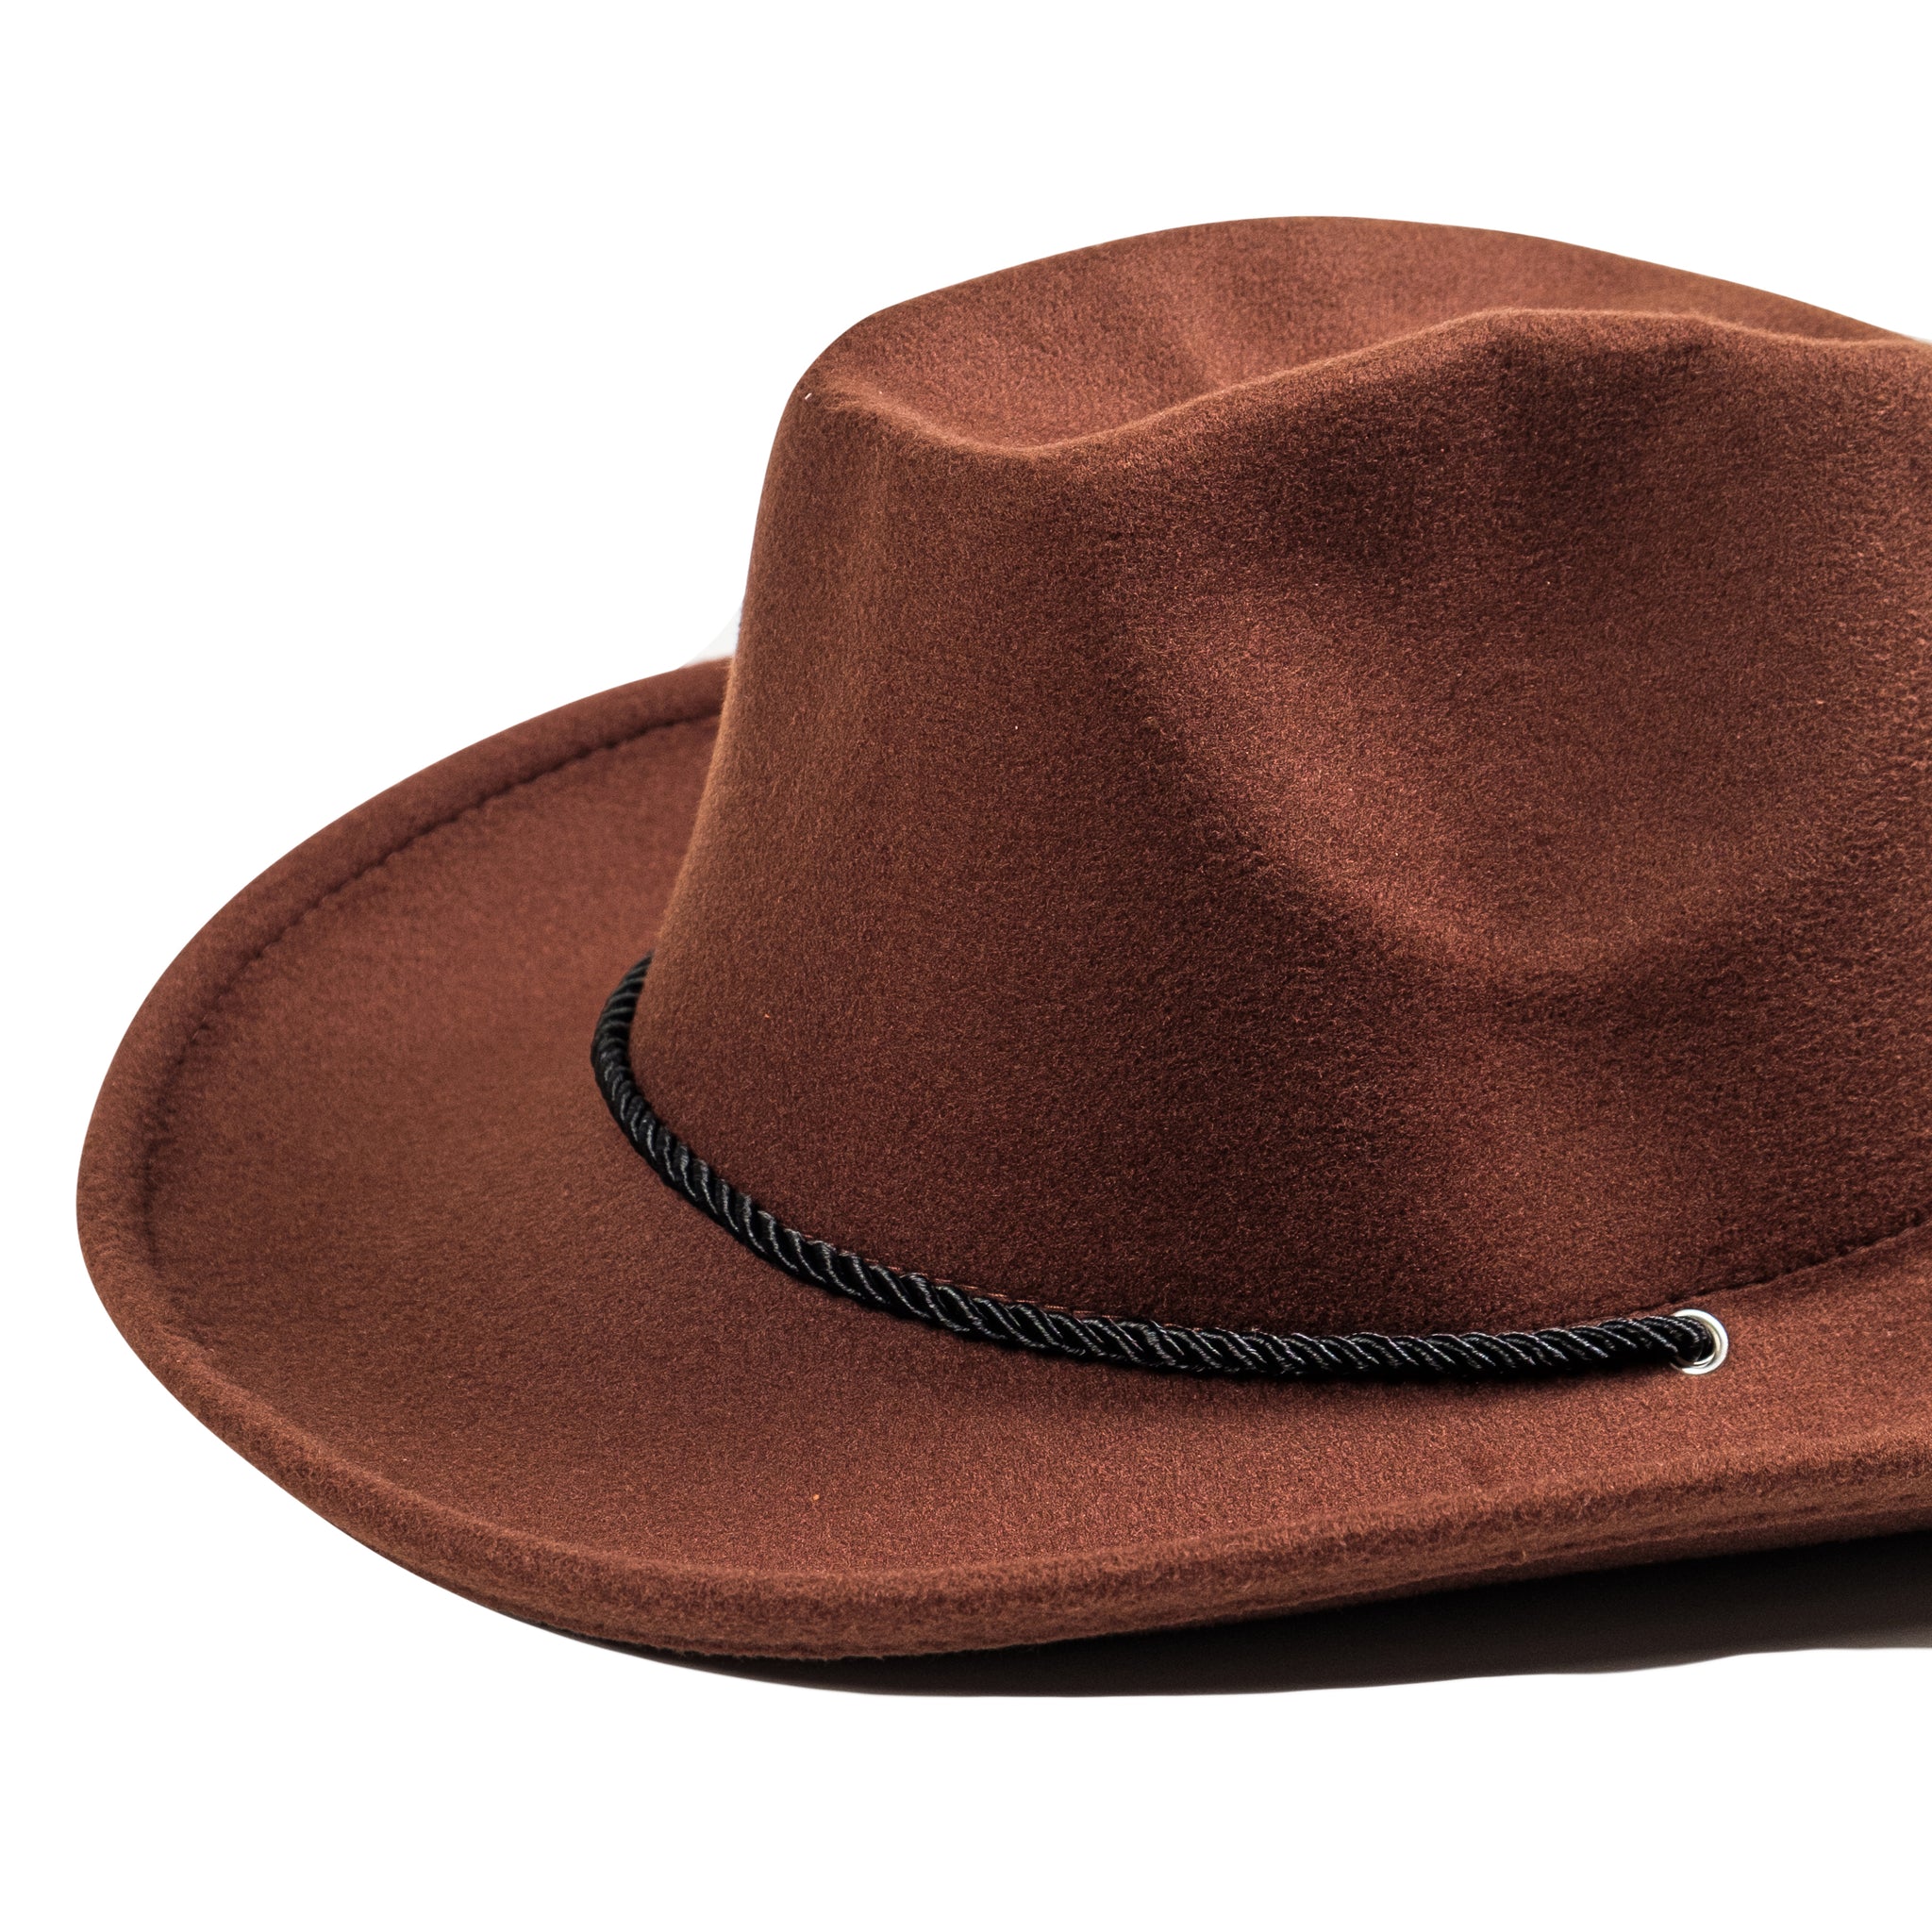 Chokore Vintage Cowboy Hat (Chocolate Brown)